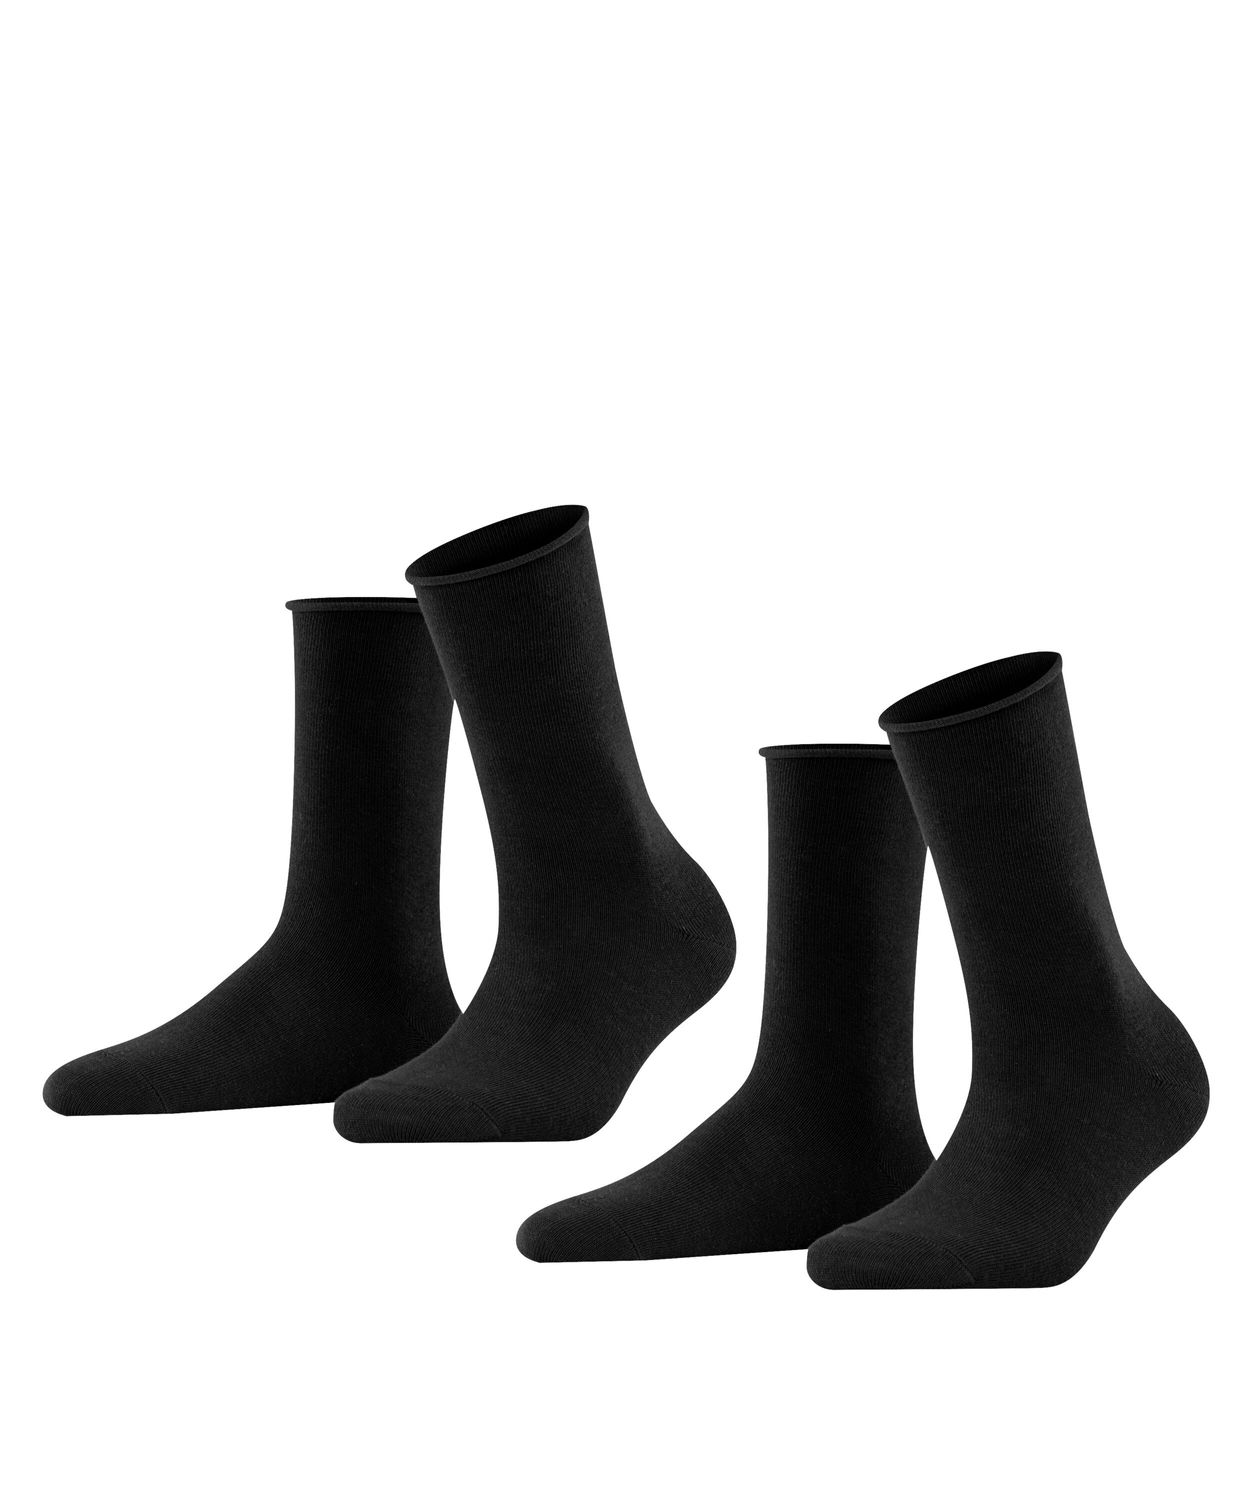 Falke Damen Socken HAPPY- 2er Pack Hersteller: Falke Bestellnummer:4043874821797